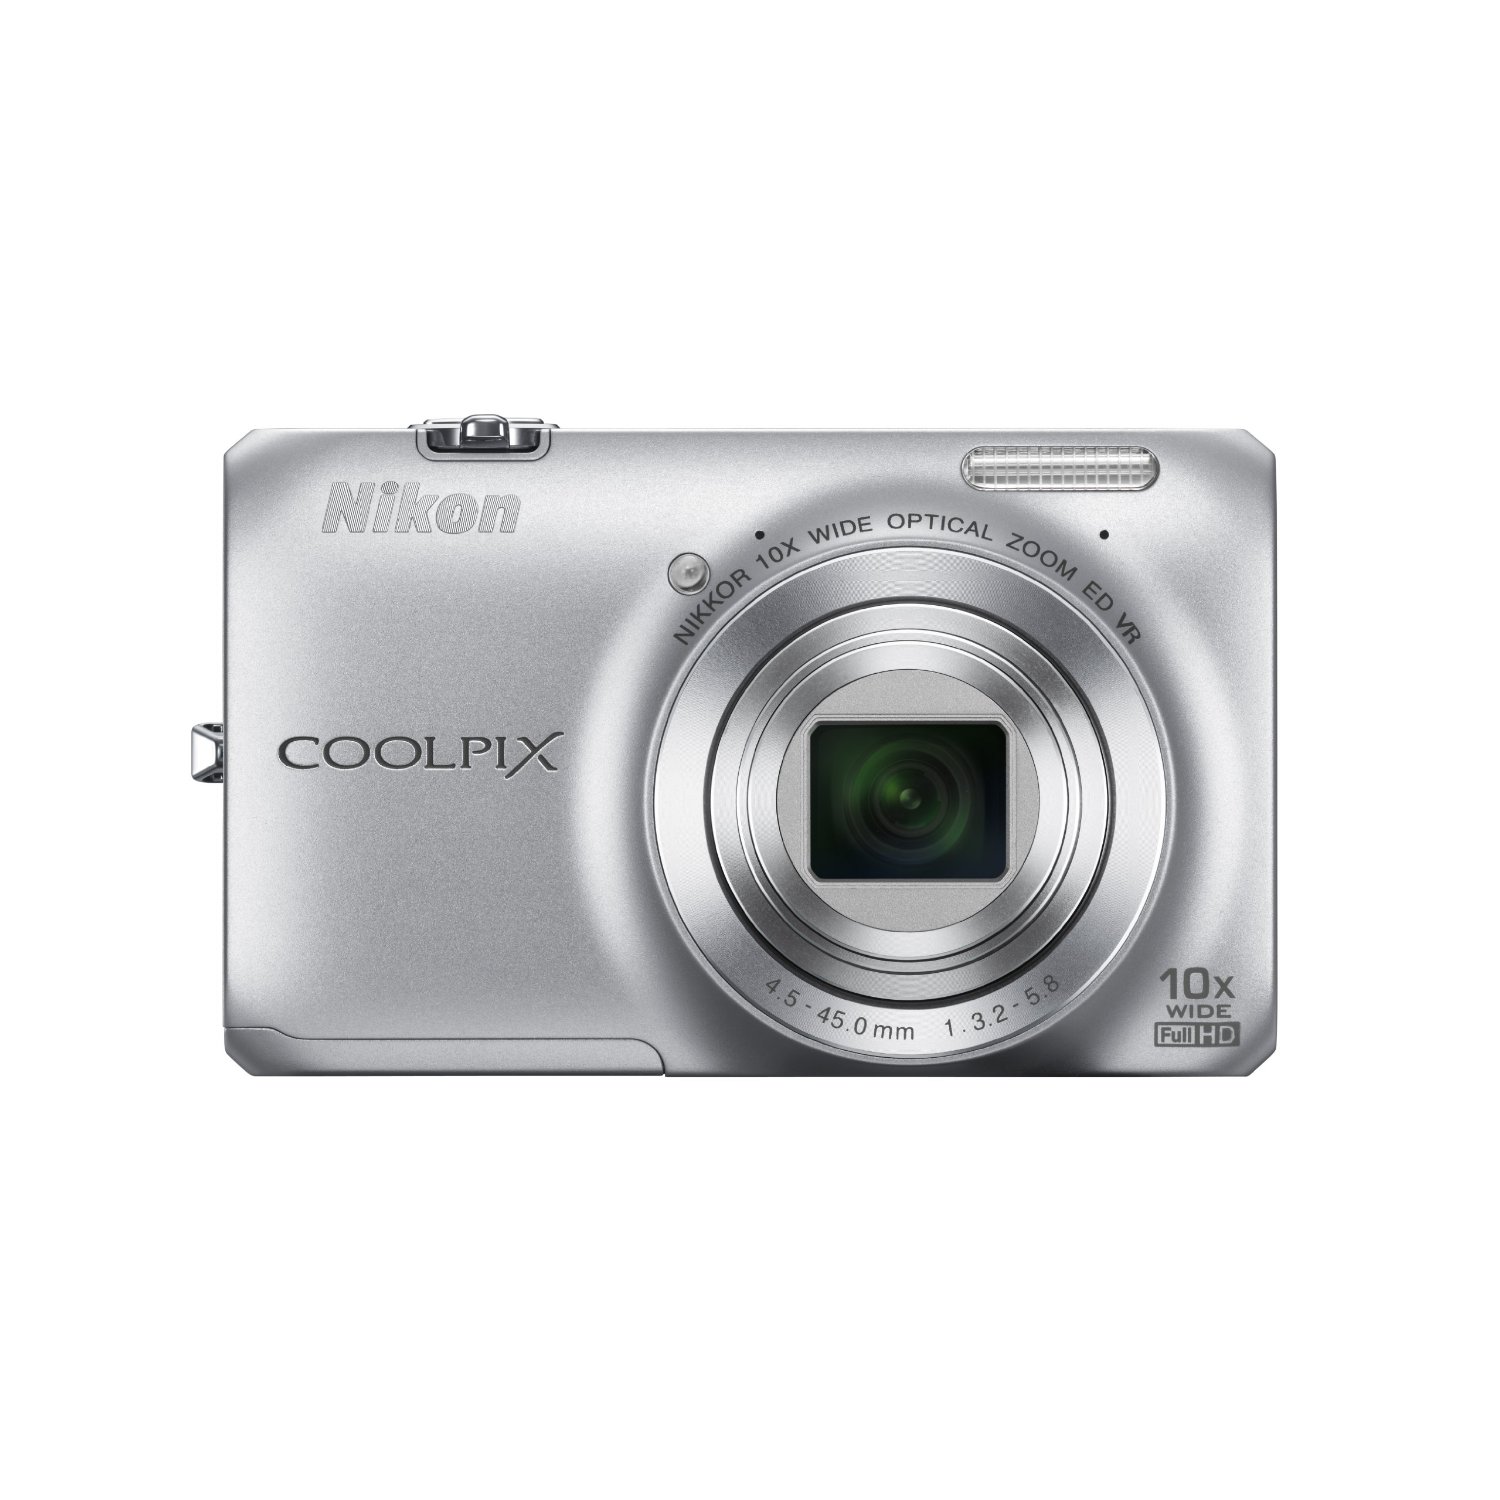 又降！尼康 Nikon Coolpix S6300 1600万像素10倍光学变焦数码相机 黑色款只要$109.95免运费